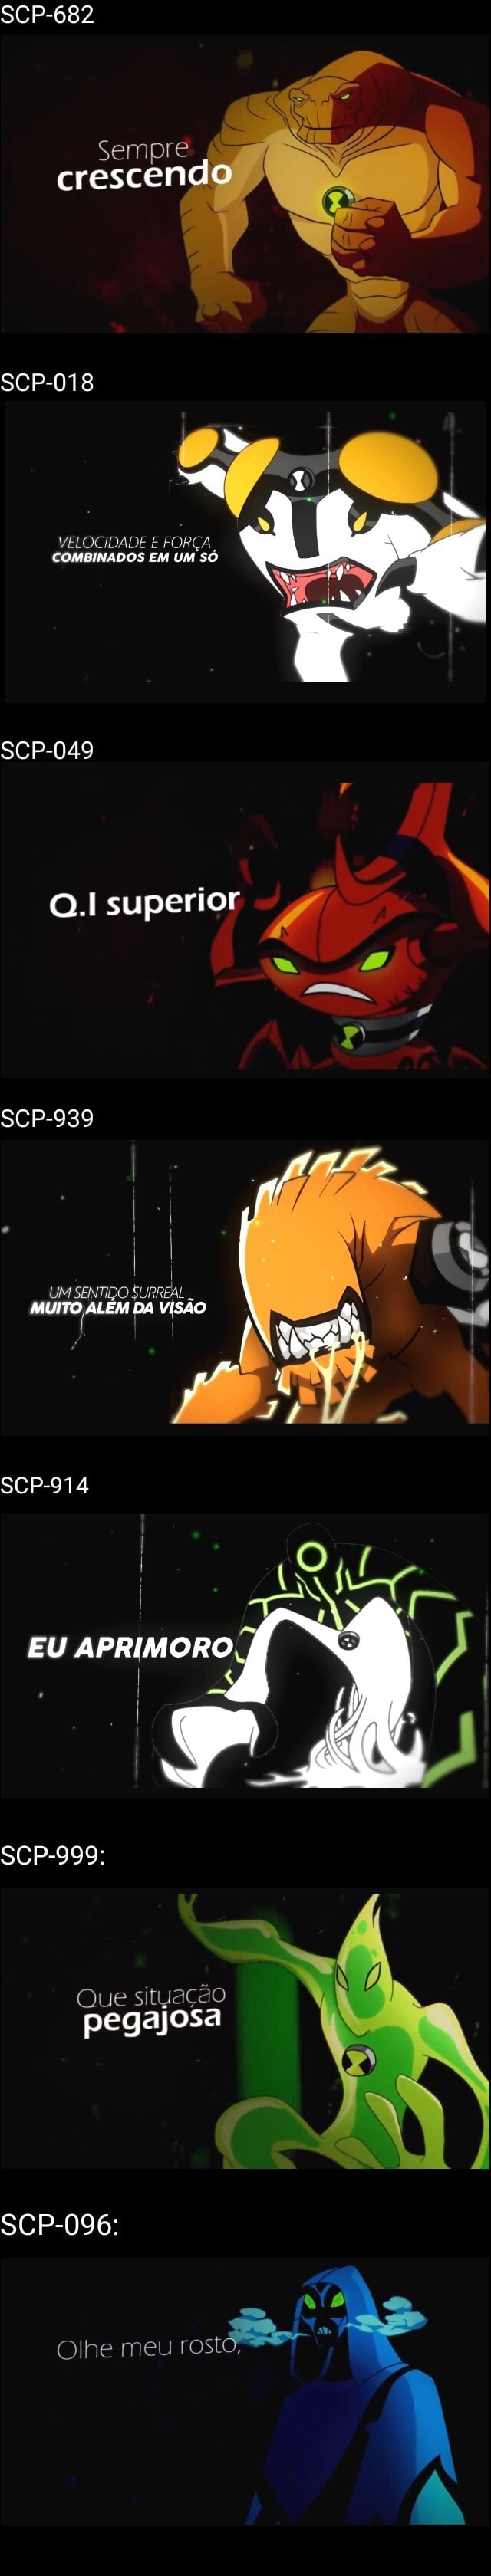 SCP-096 vs SCP-939